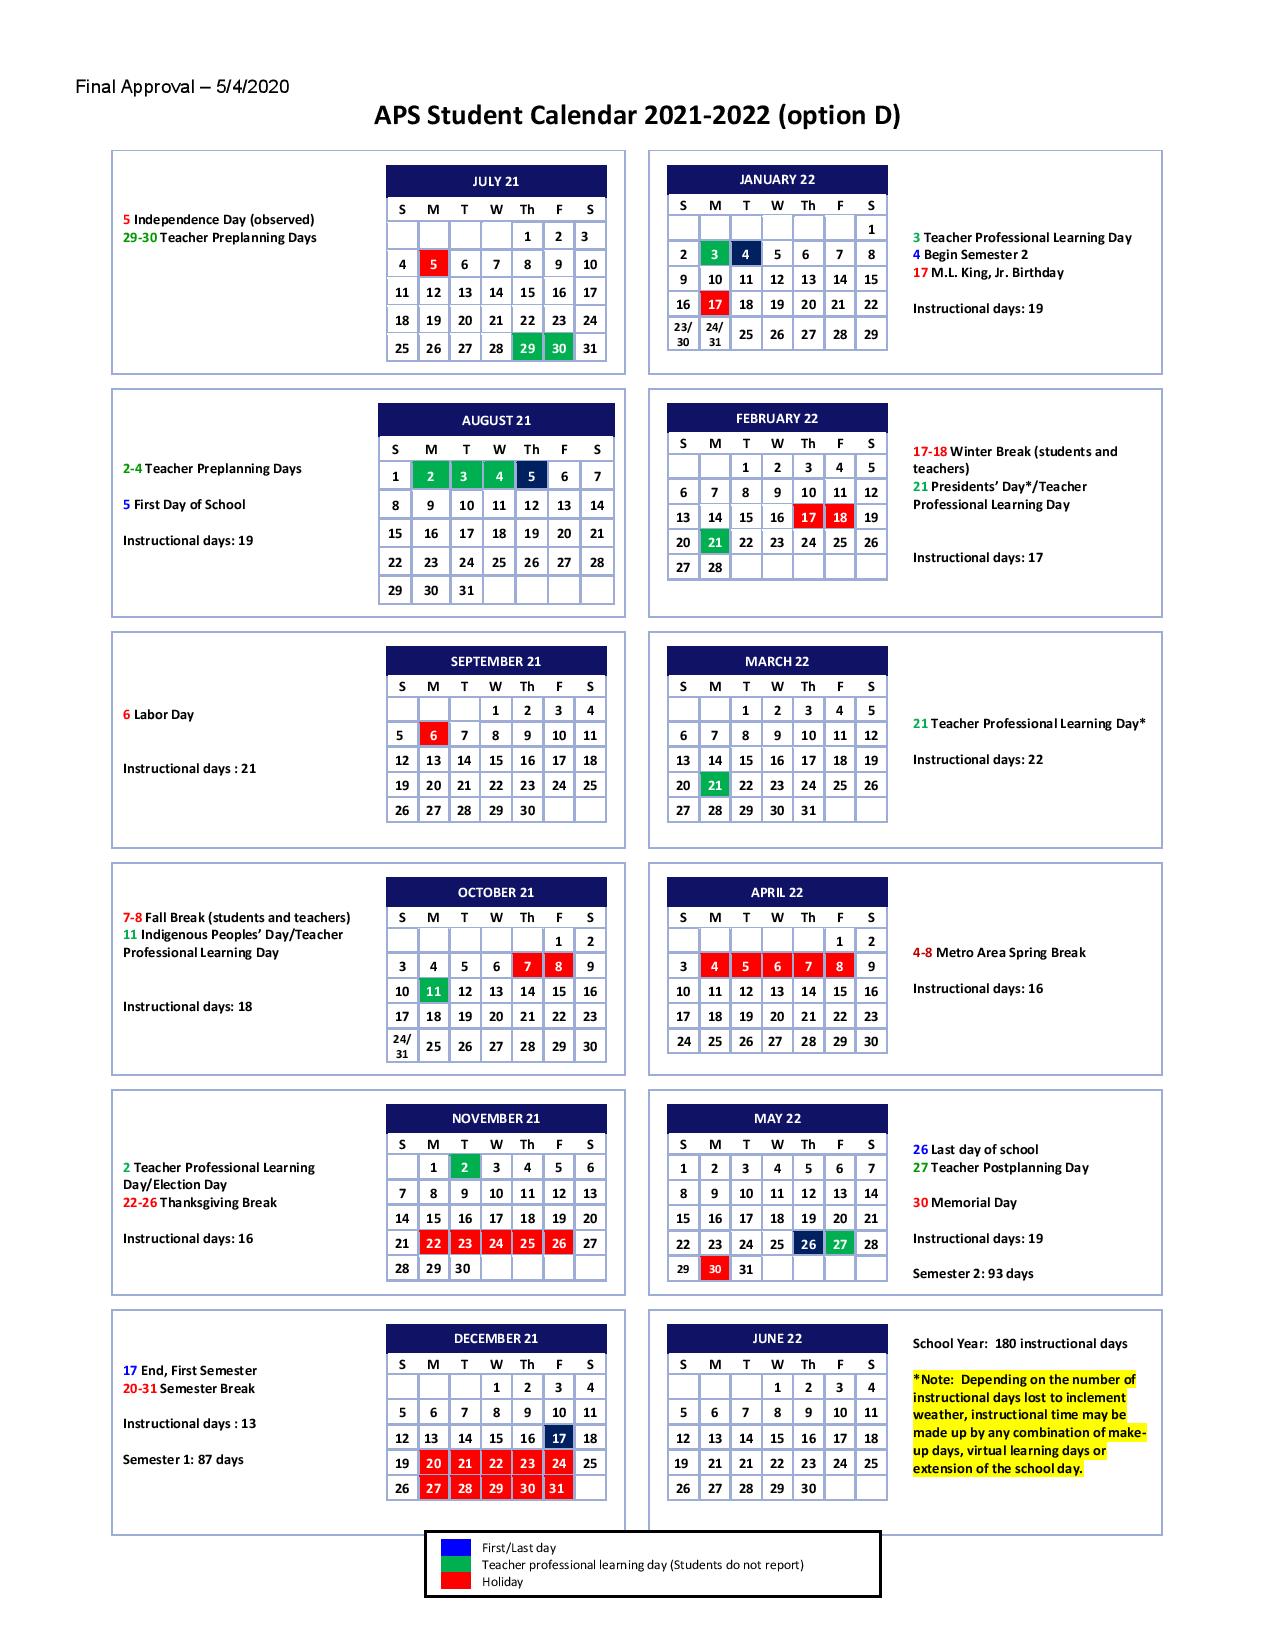 Atlanta Public Schools Calendar 2021 2022 In Pdf